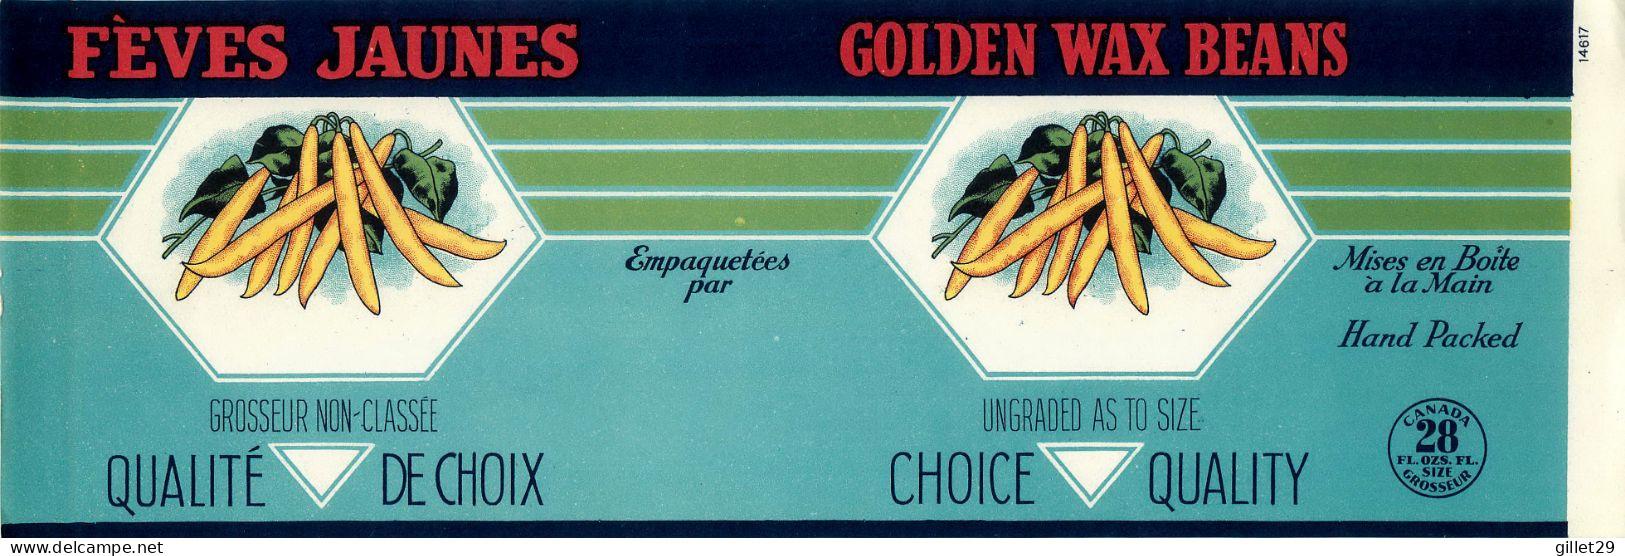 ÉTIQUETTES - FÈVES JAUNES - GOLDEN WAX BEANS - 28 OZS CANADA - DIMENSION 11 X 33 Cm - - Fruits Et Légumes